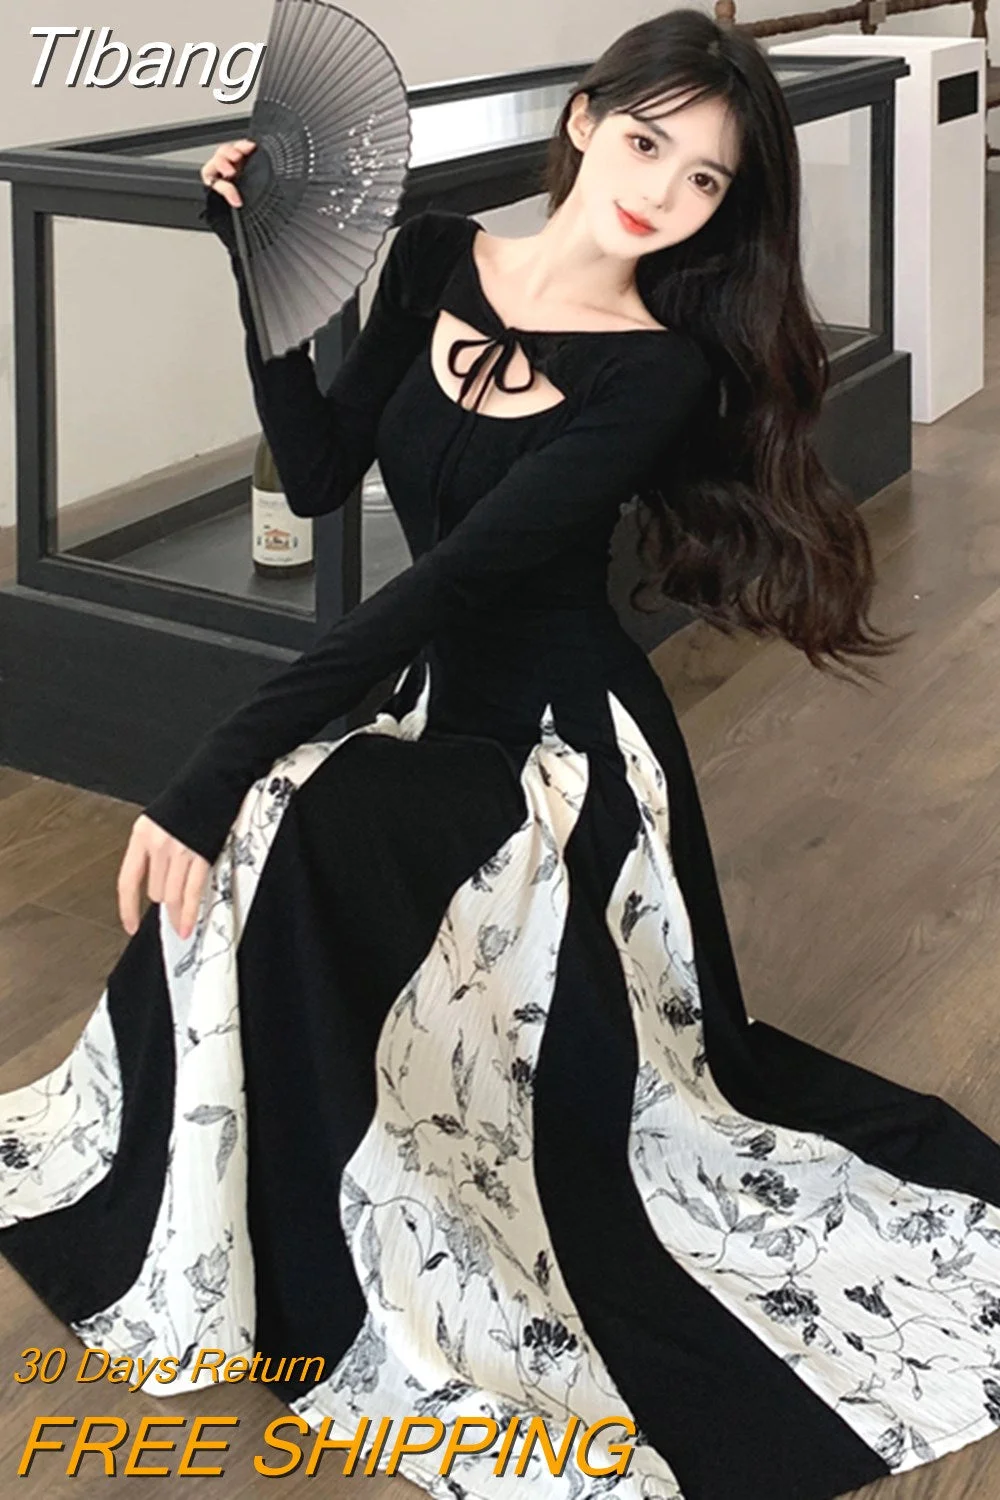 Tlbang Knitted Patchwork Floral Dress Irregular Design Sense Hepburn Wind Sweet Fashion Slim Summer New Black Long Dresses